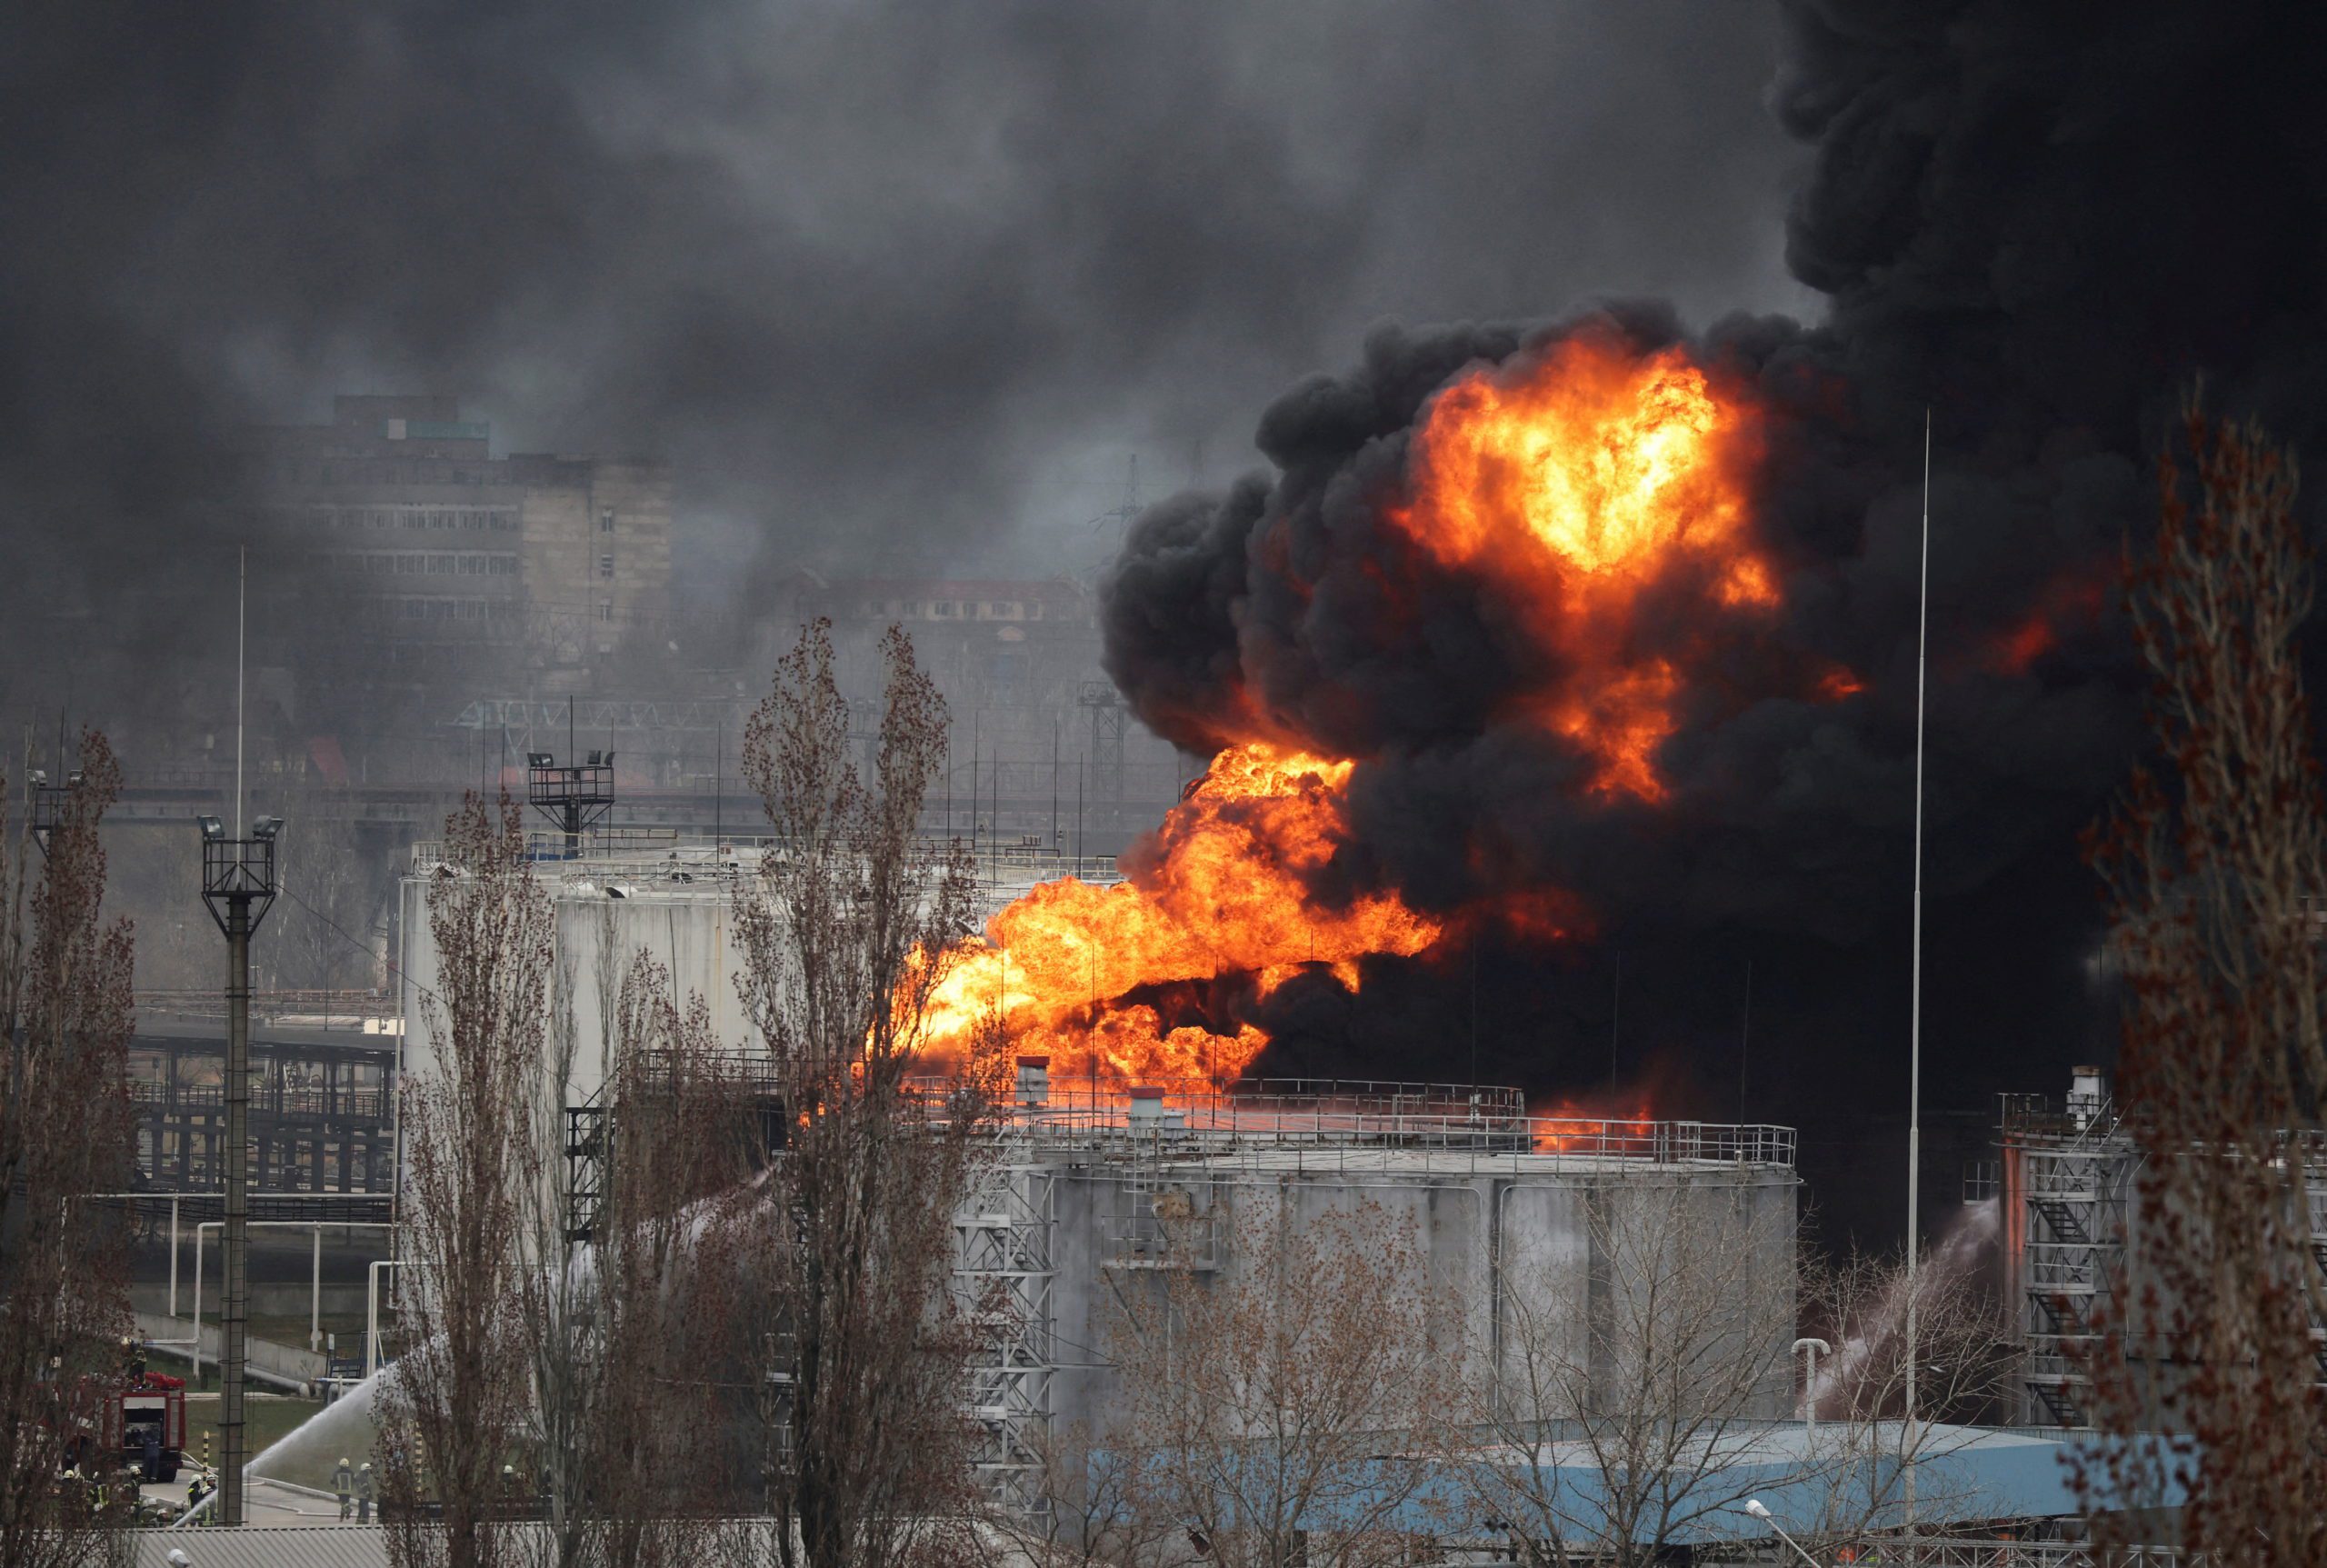 Shkak një incident, gjysmë milioni njerëz pa energji elektrike në Odesa